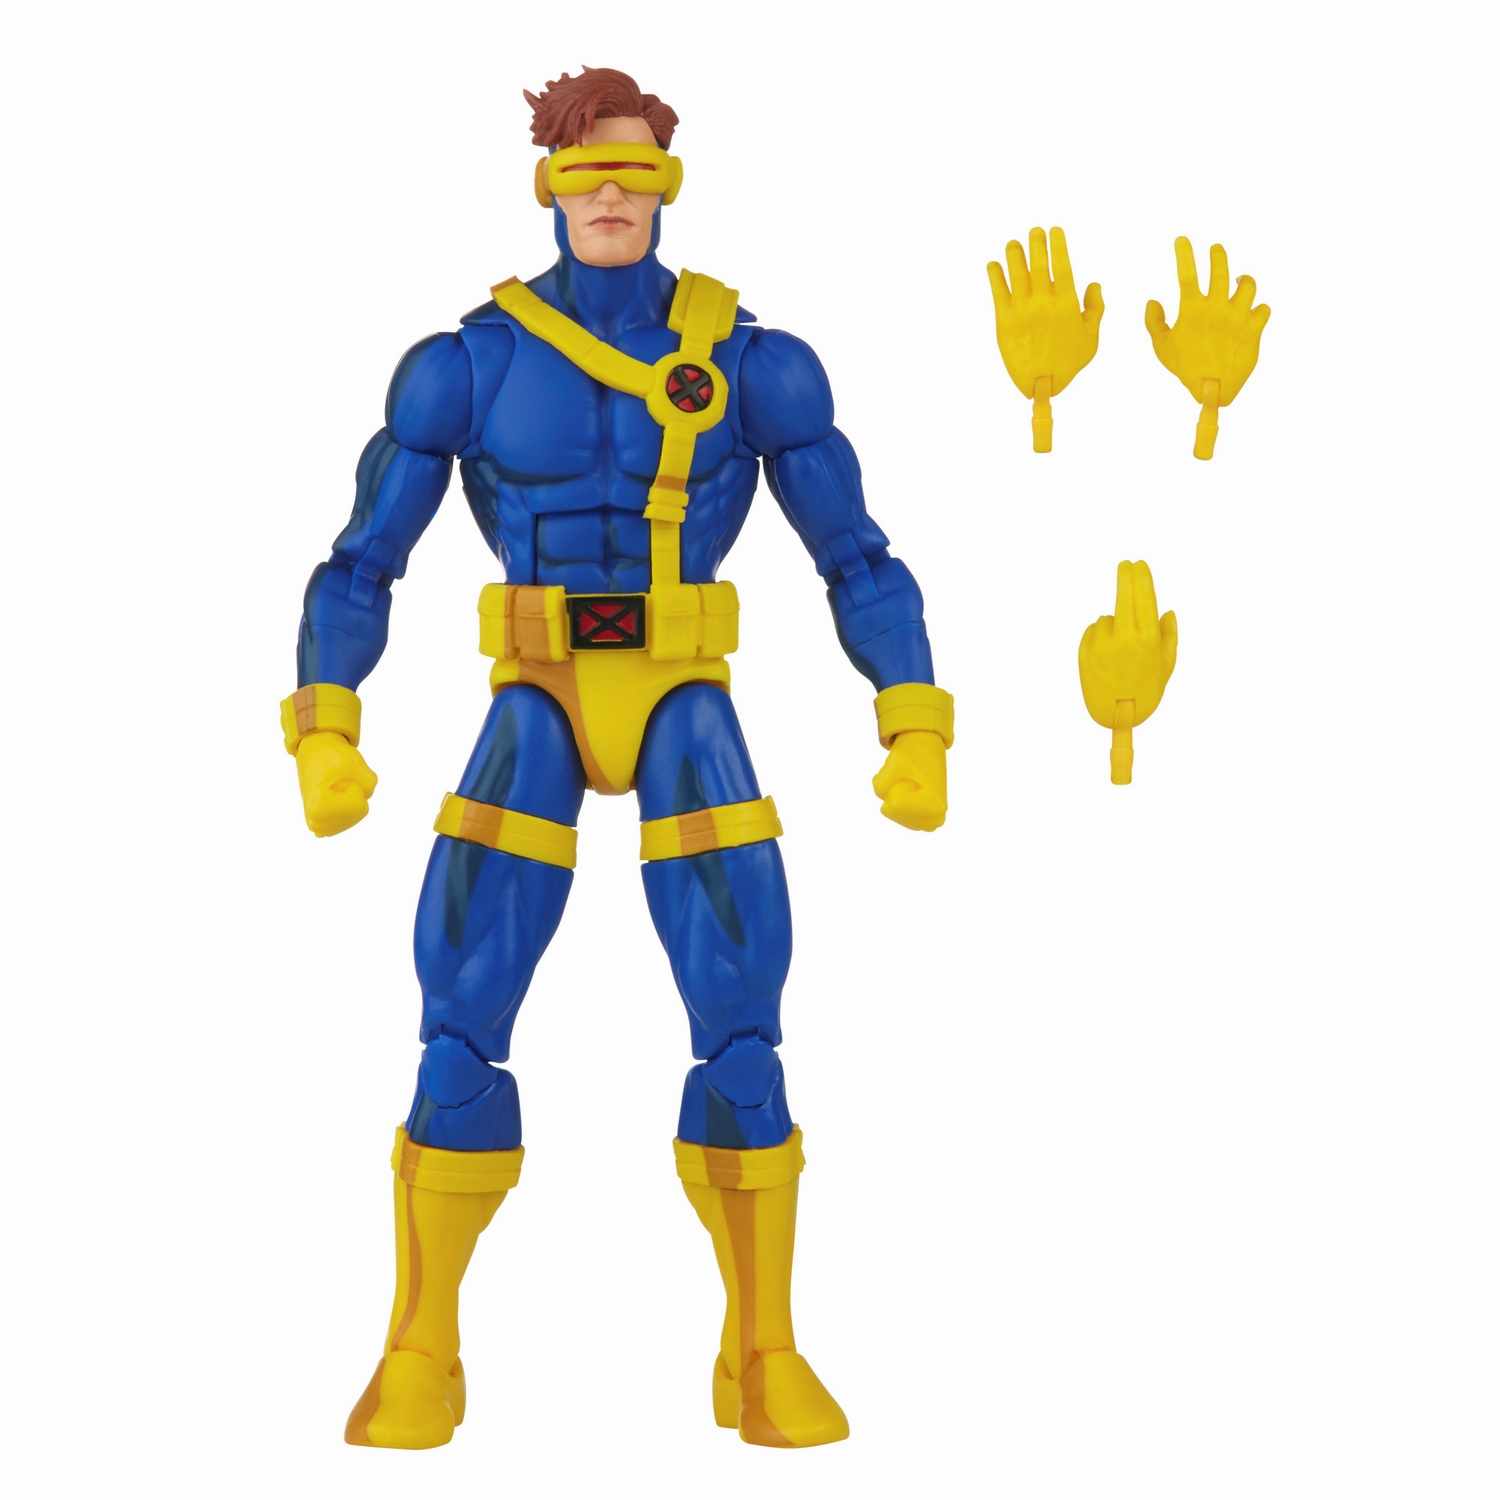 Marvel Legends Series X-Men Marvel’s Cyclops 6.jpg